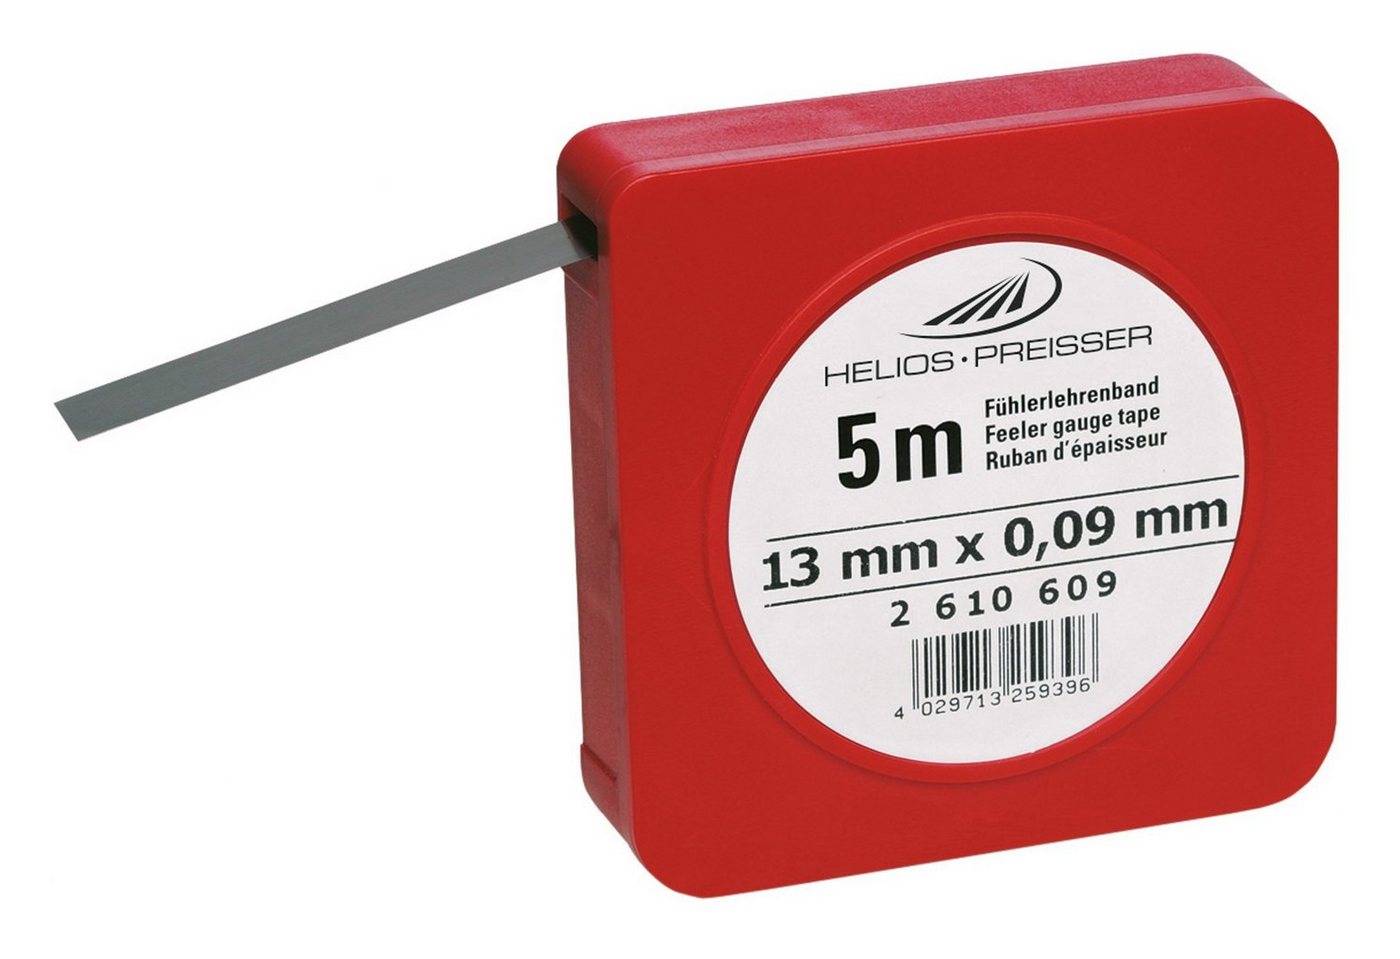 HELIOS PREISSER Fühlerlehre, Fühlerlehrenband 0,2 mm von HELIOS PREISSER